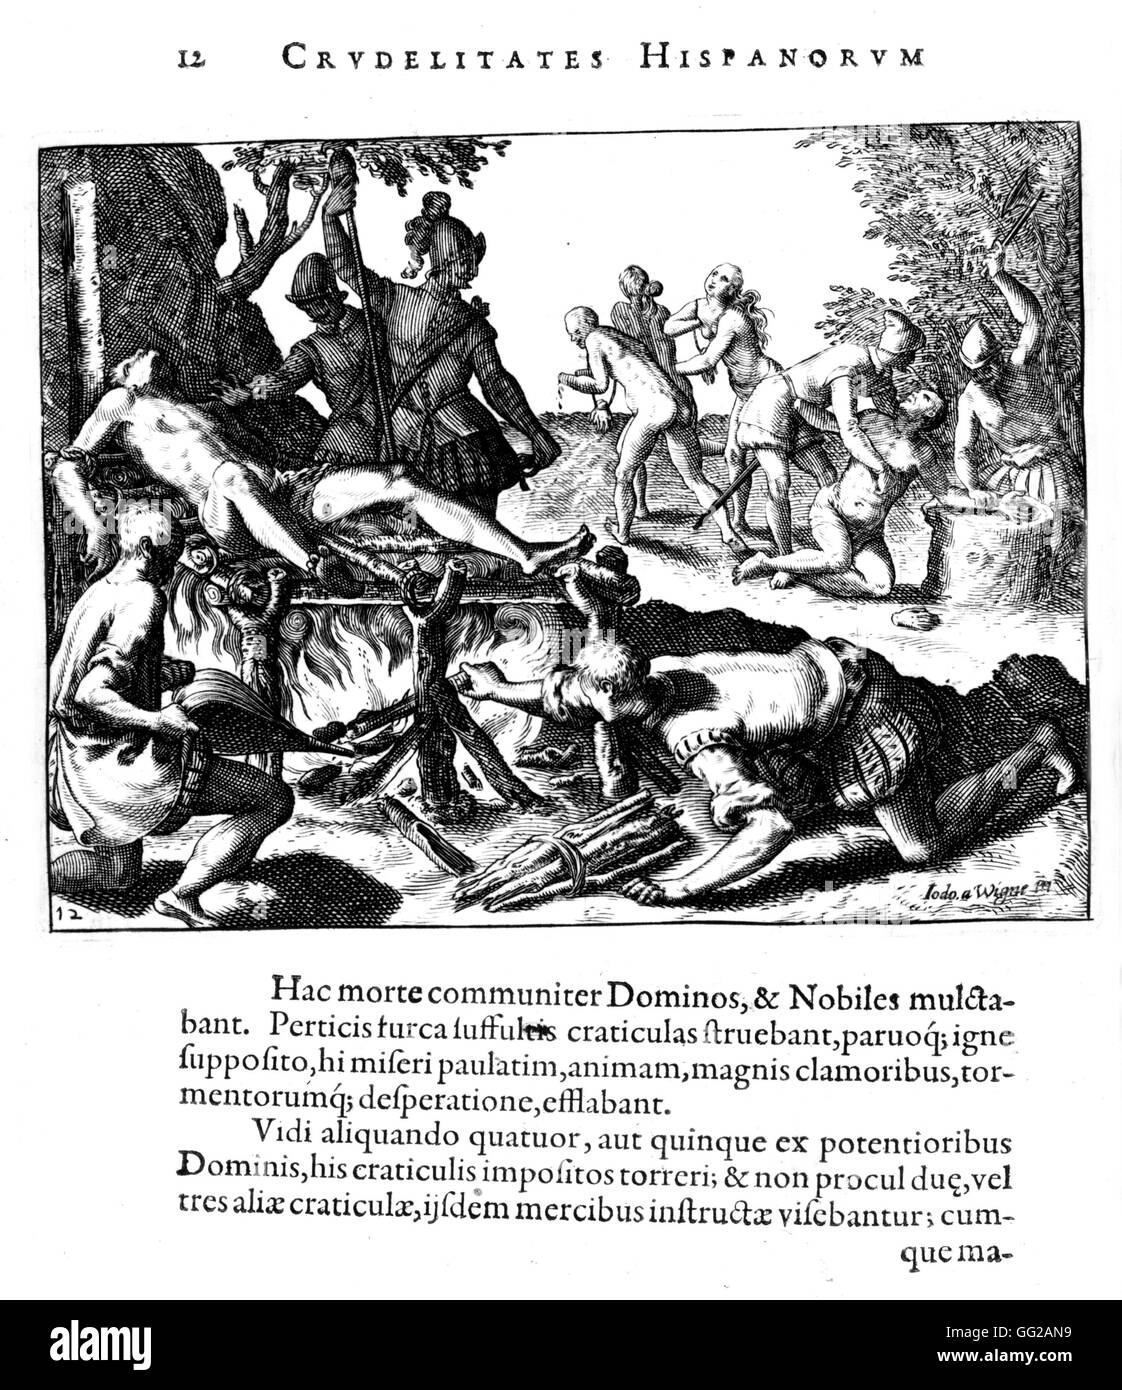 Incisione di Théodore de Bry Bartholomé de Las Casas. La crudeltà di uomini Spagnolo in America 1598 Foto Stock